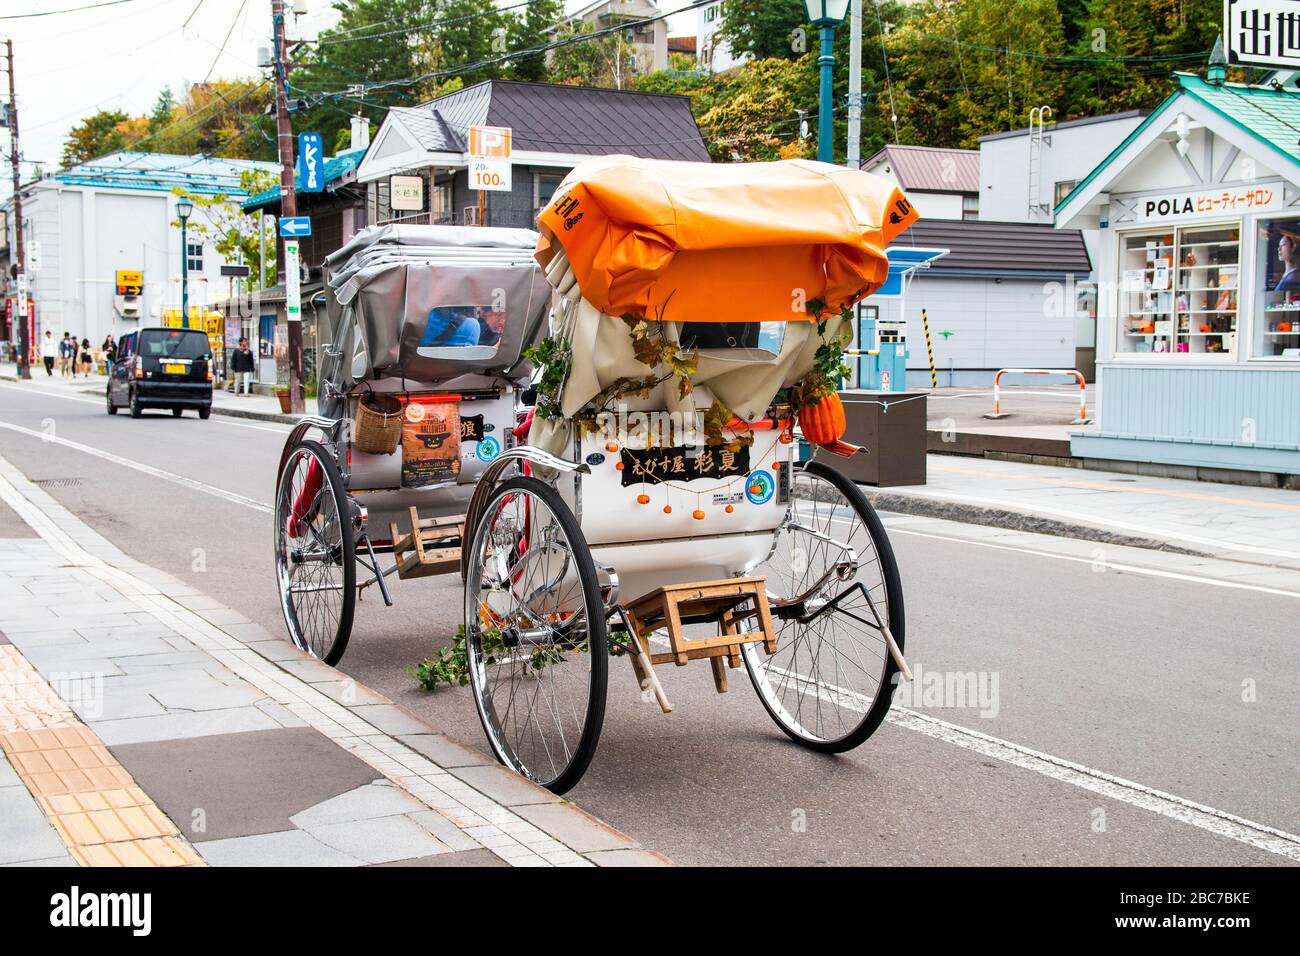 Traditionelle japanische Dreirad Fahrt mit Pflanzendekorationen Parks auf  der Straße.drei Rädern öffentlichen Fahrzeug in Japan Stockfotografie -  Alamy